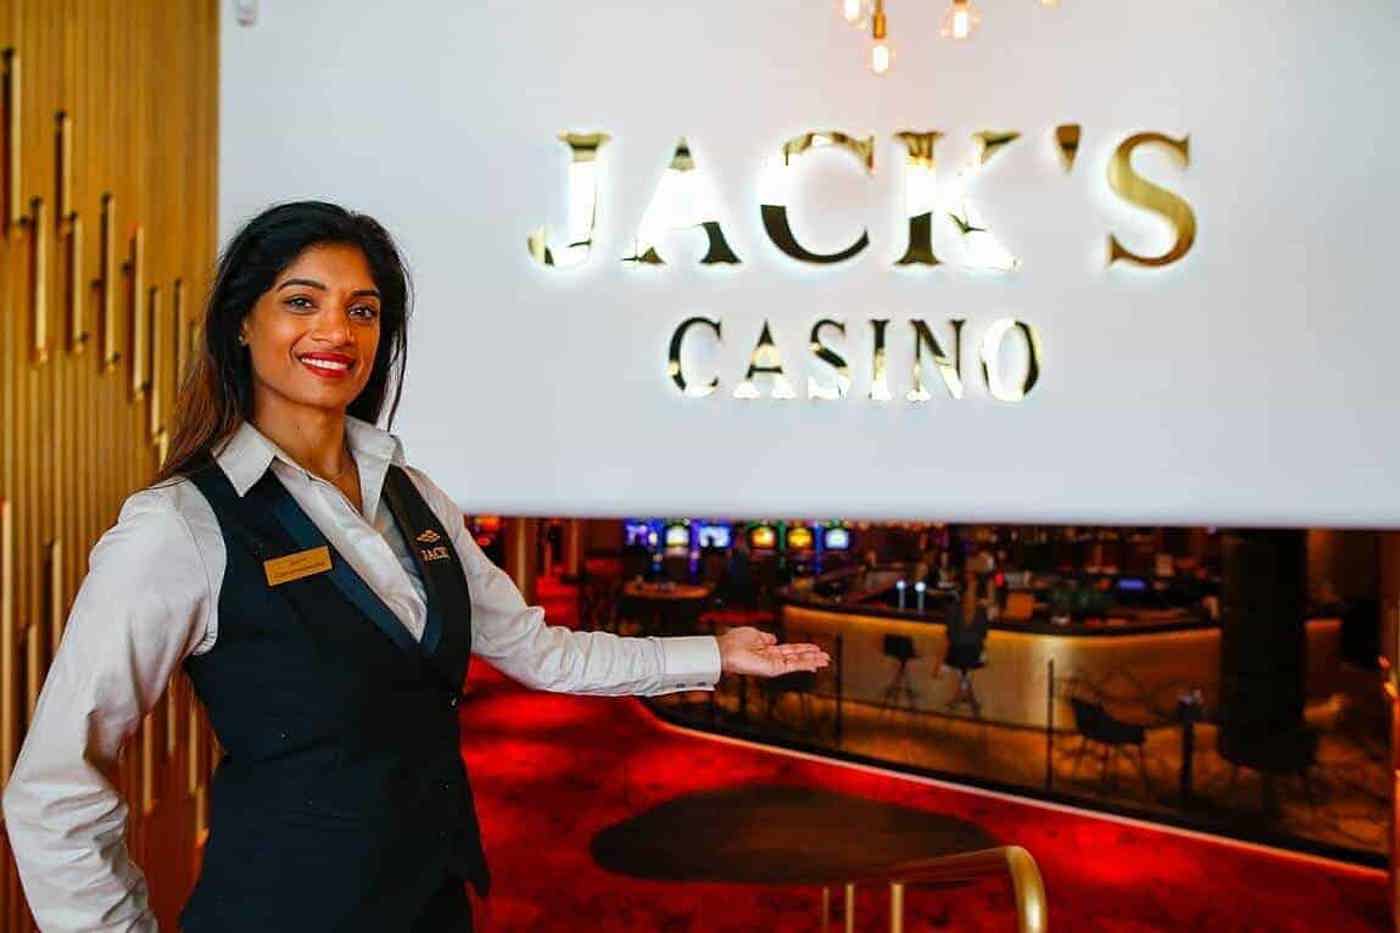 Jacks Casino Oostzaan Ingang